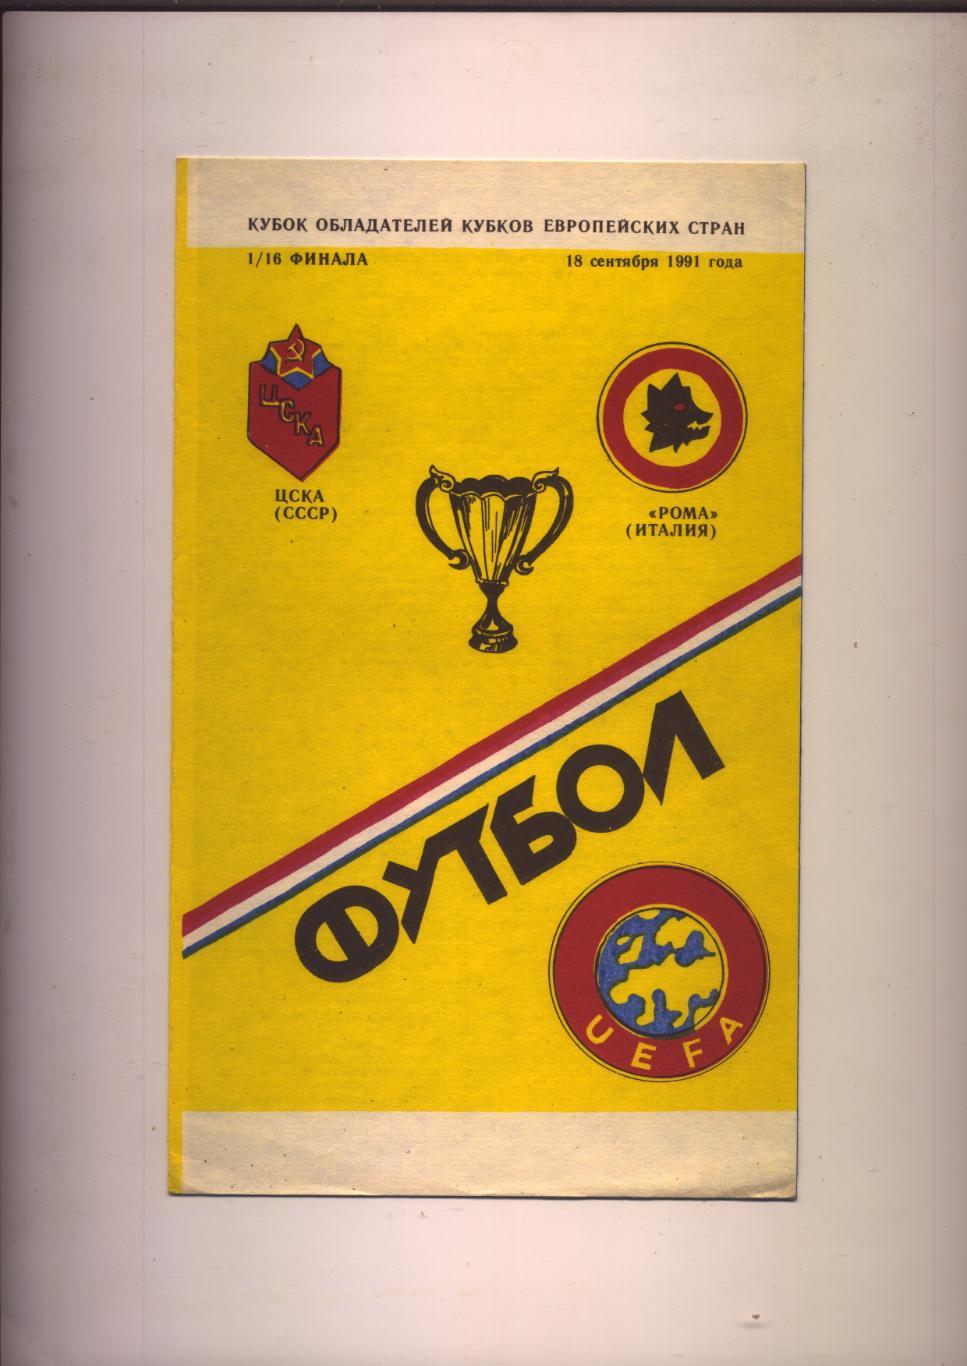 Программа Кубок обладателей Кубков ЦСКА Москва - Рома Италия 18 09 1991 г